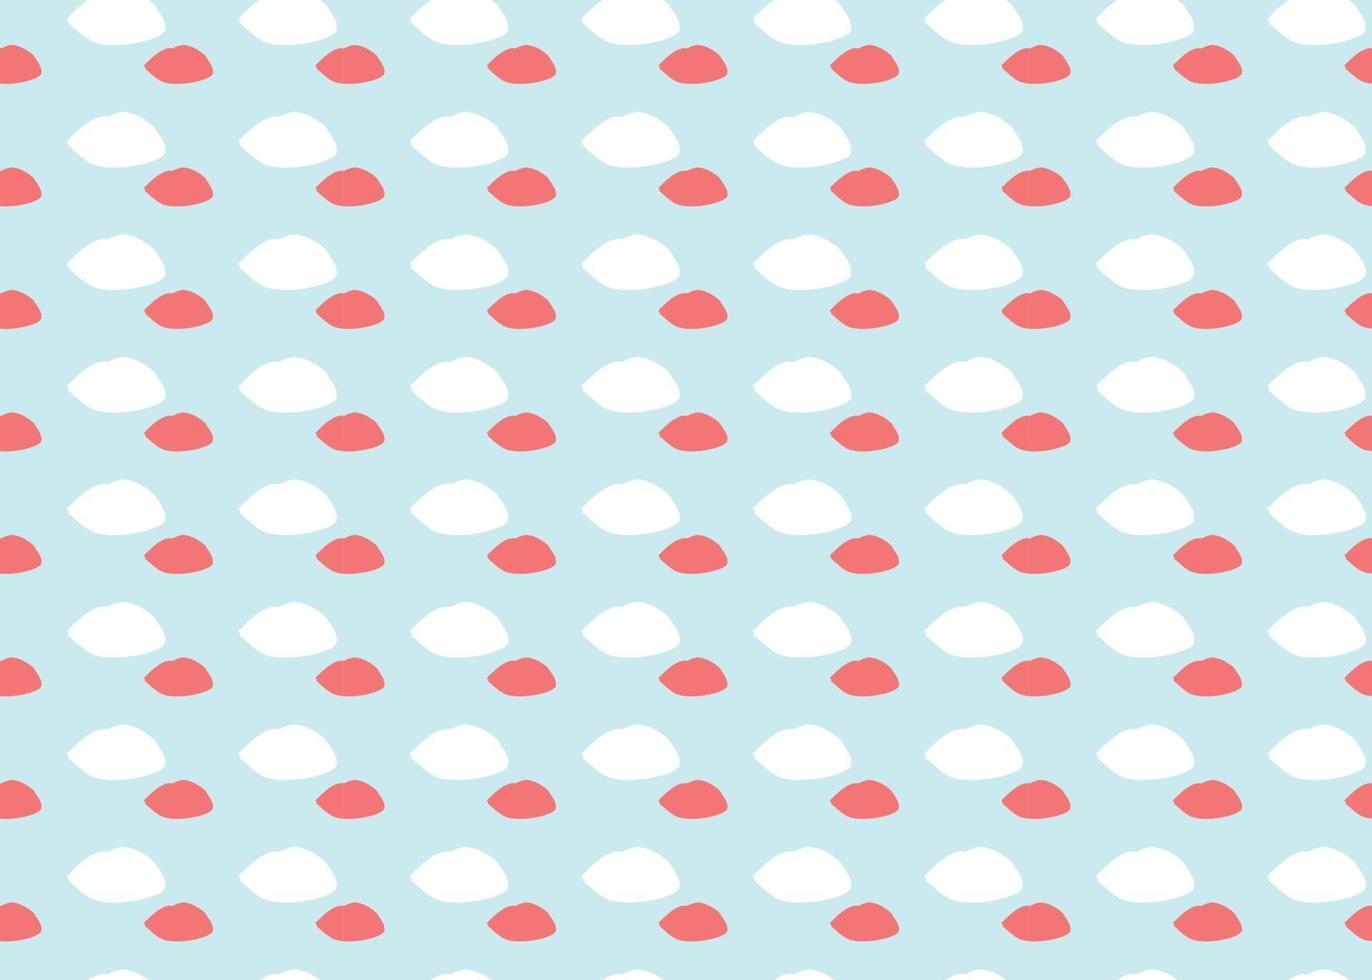 Vektor Textur Hintergrund, nahtloses Muster. handgezeichnete, blaue, weiße, rote Farben.